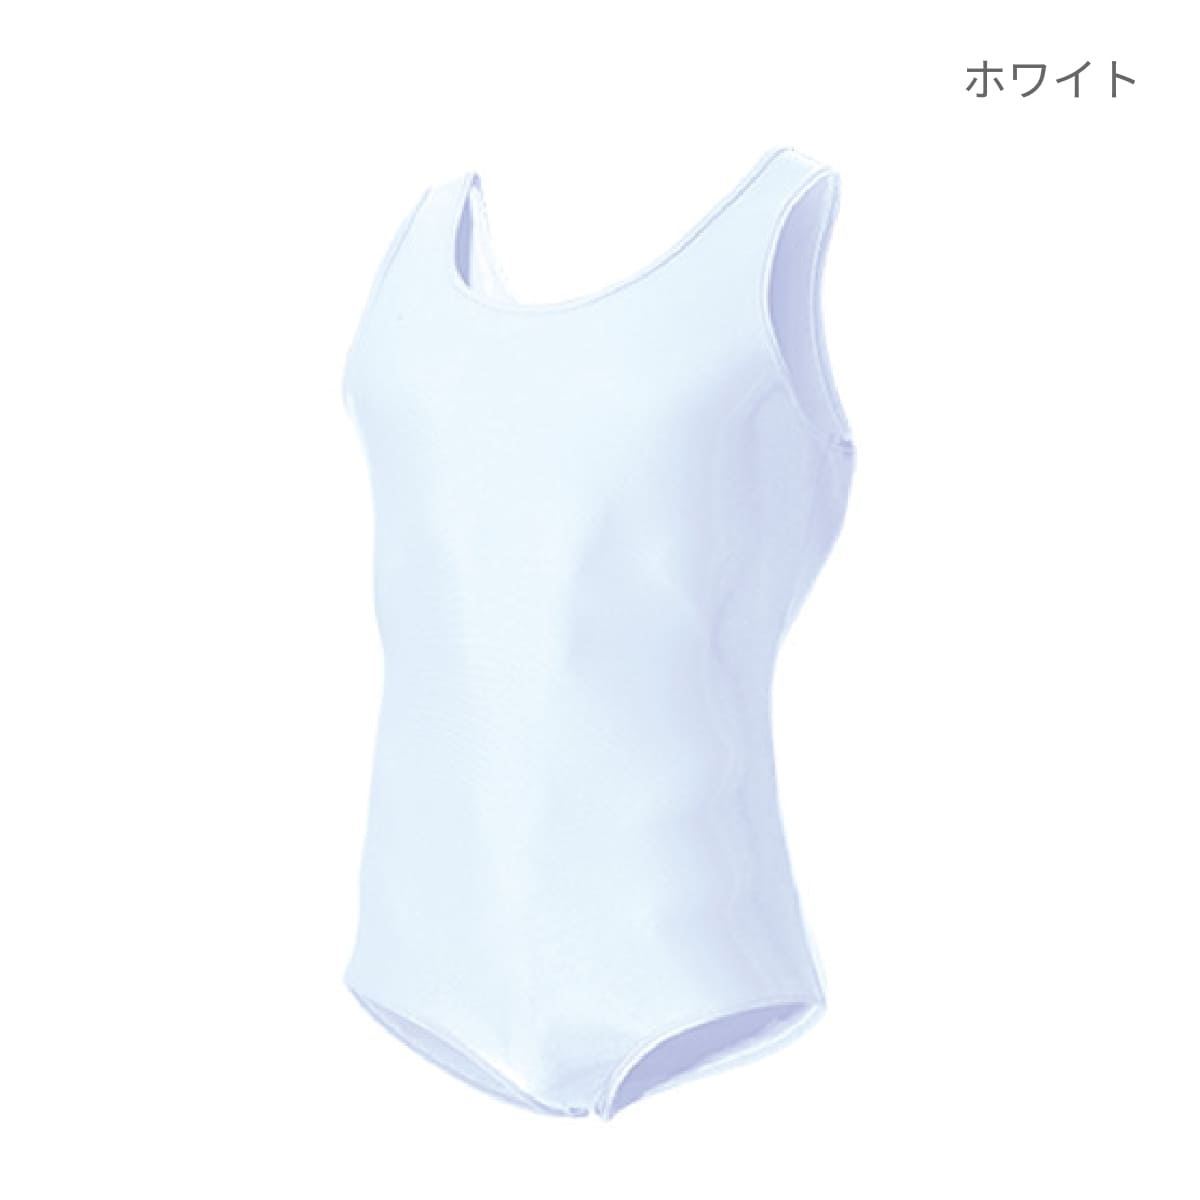 【送料無料】男子体操シャツ | ユニフォーム | 1枚 | P400 | ロイヤルブルー